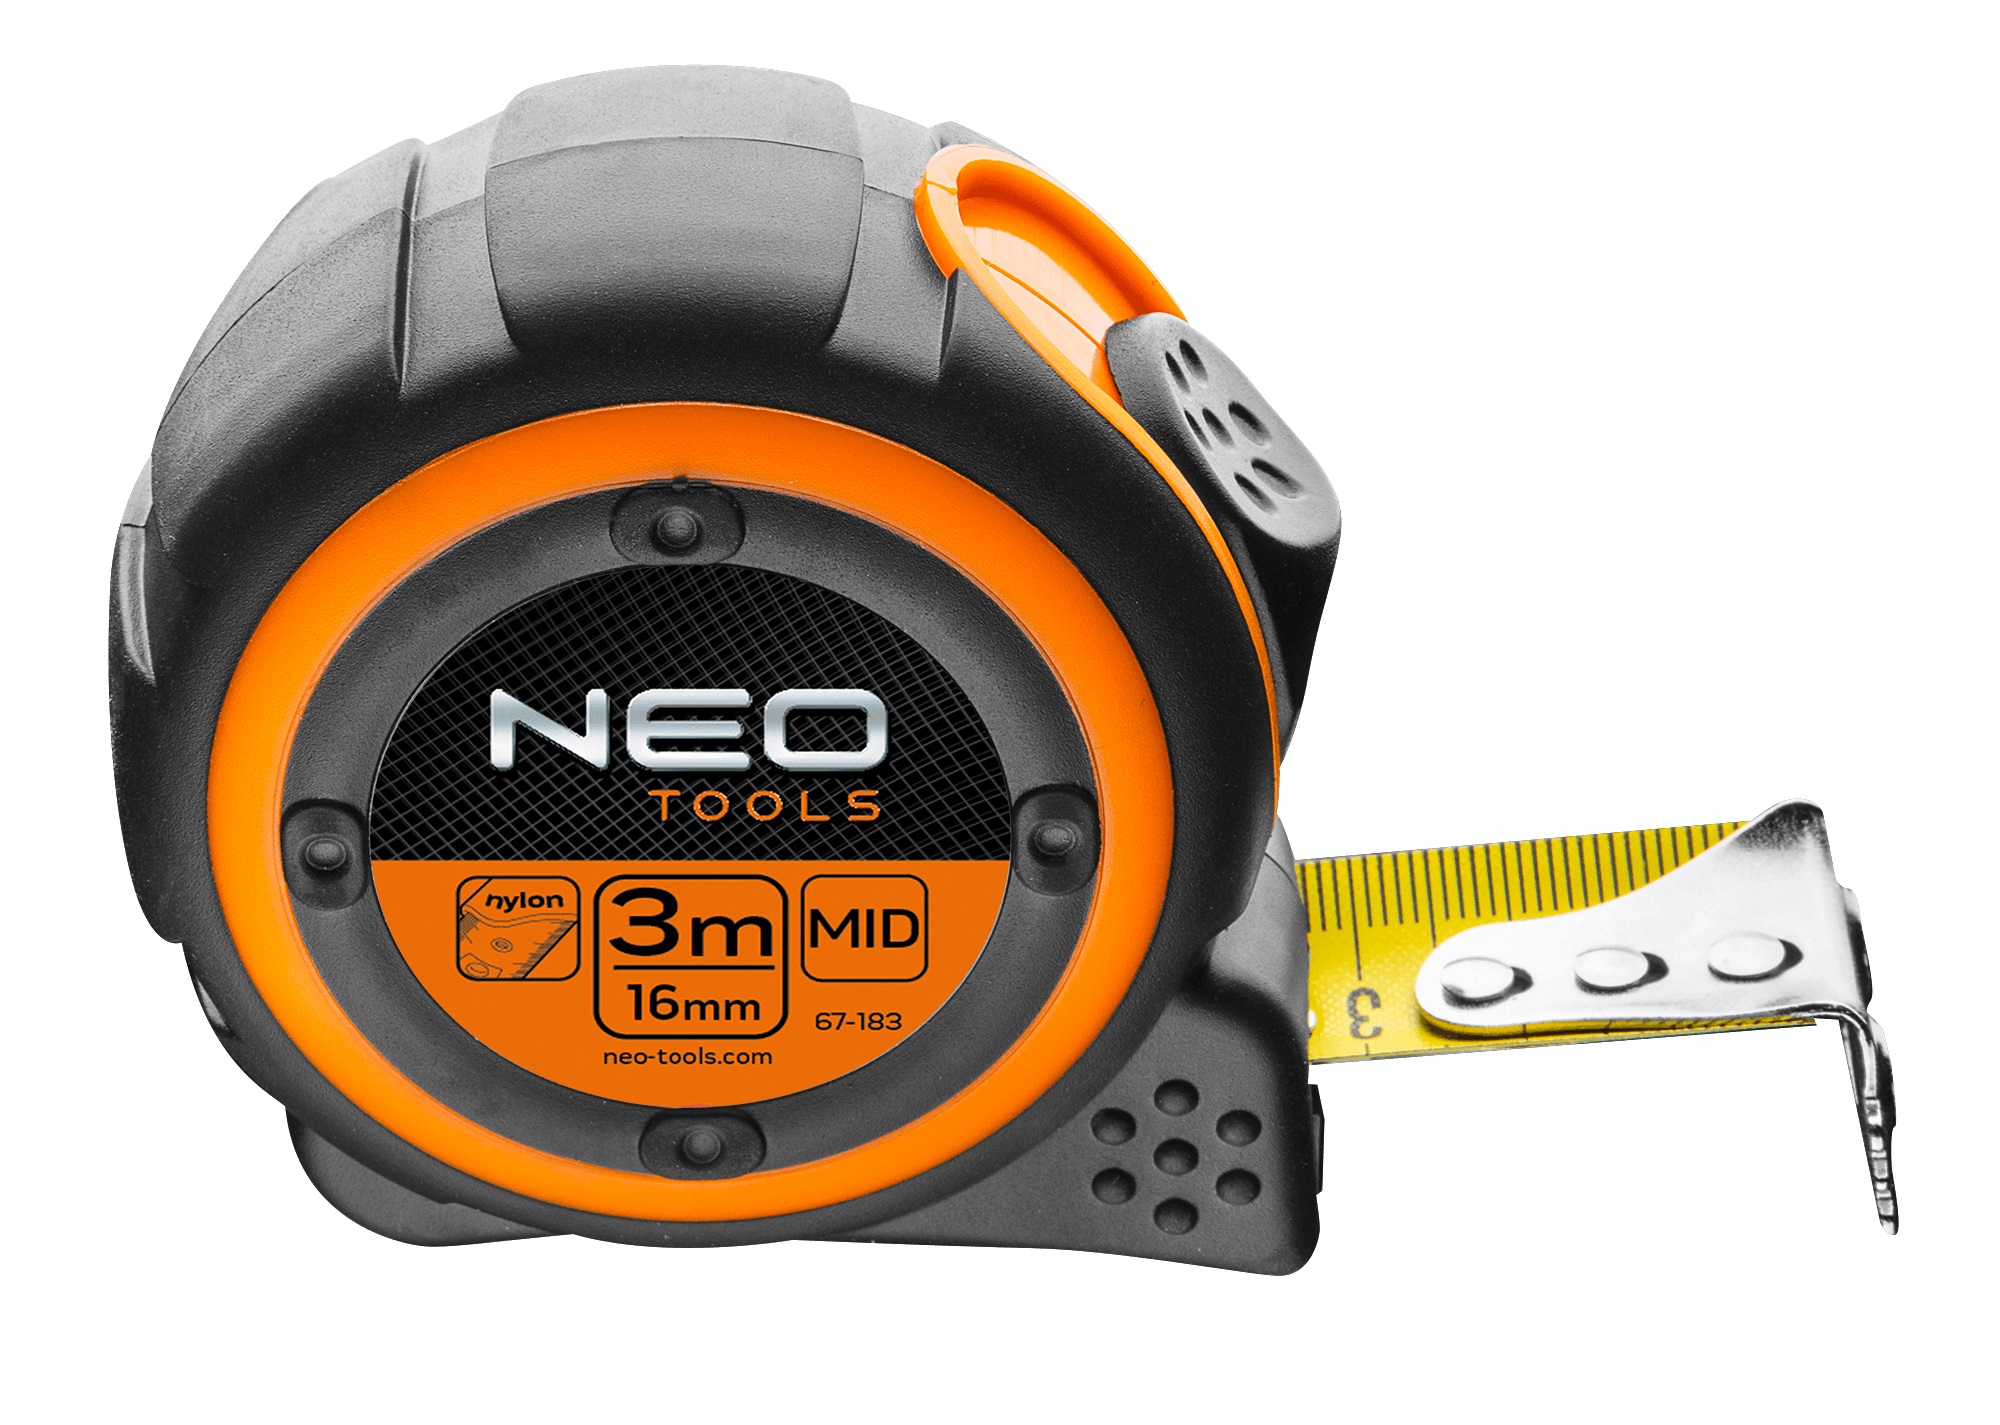 Характеристики рулетка Neo Tools 67-183